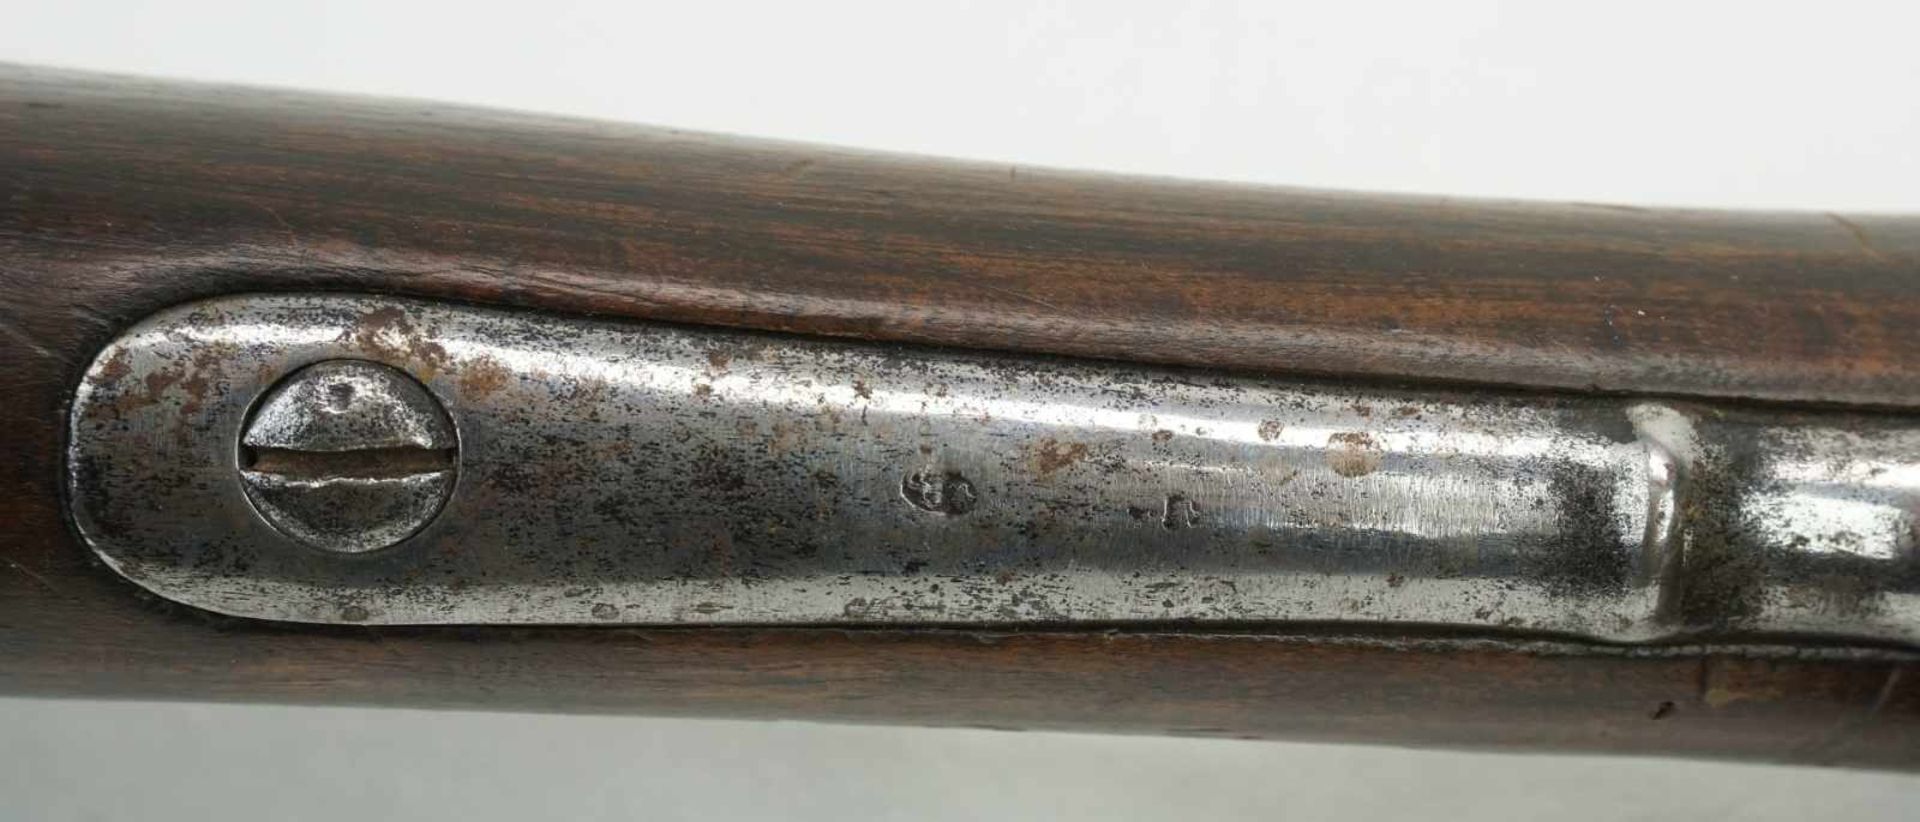 Tulle Dragoner Steinschlossgewehr mit Bajonett Frankreich, 18151. französisches Kaiserreich, - Image 8 of 9